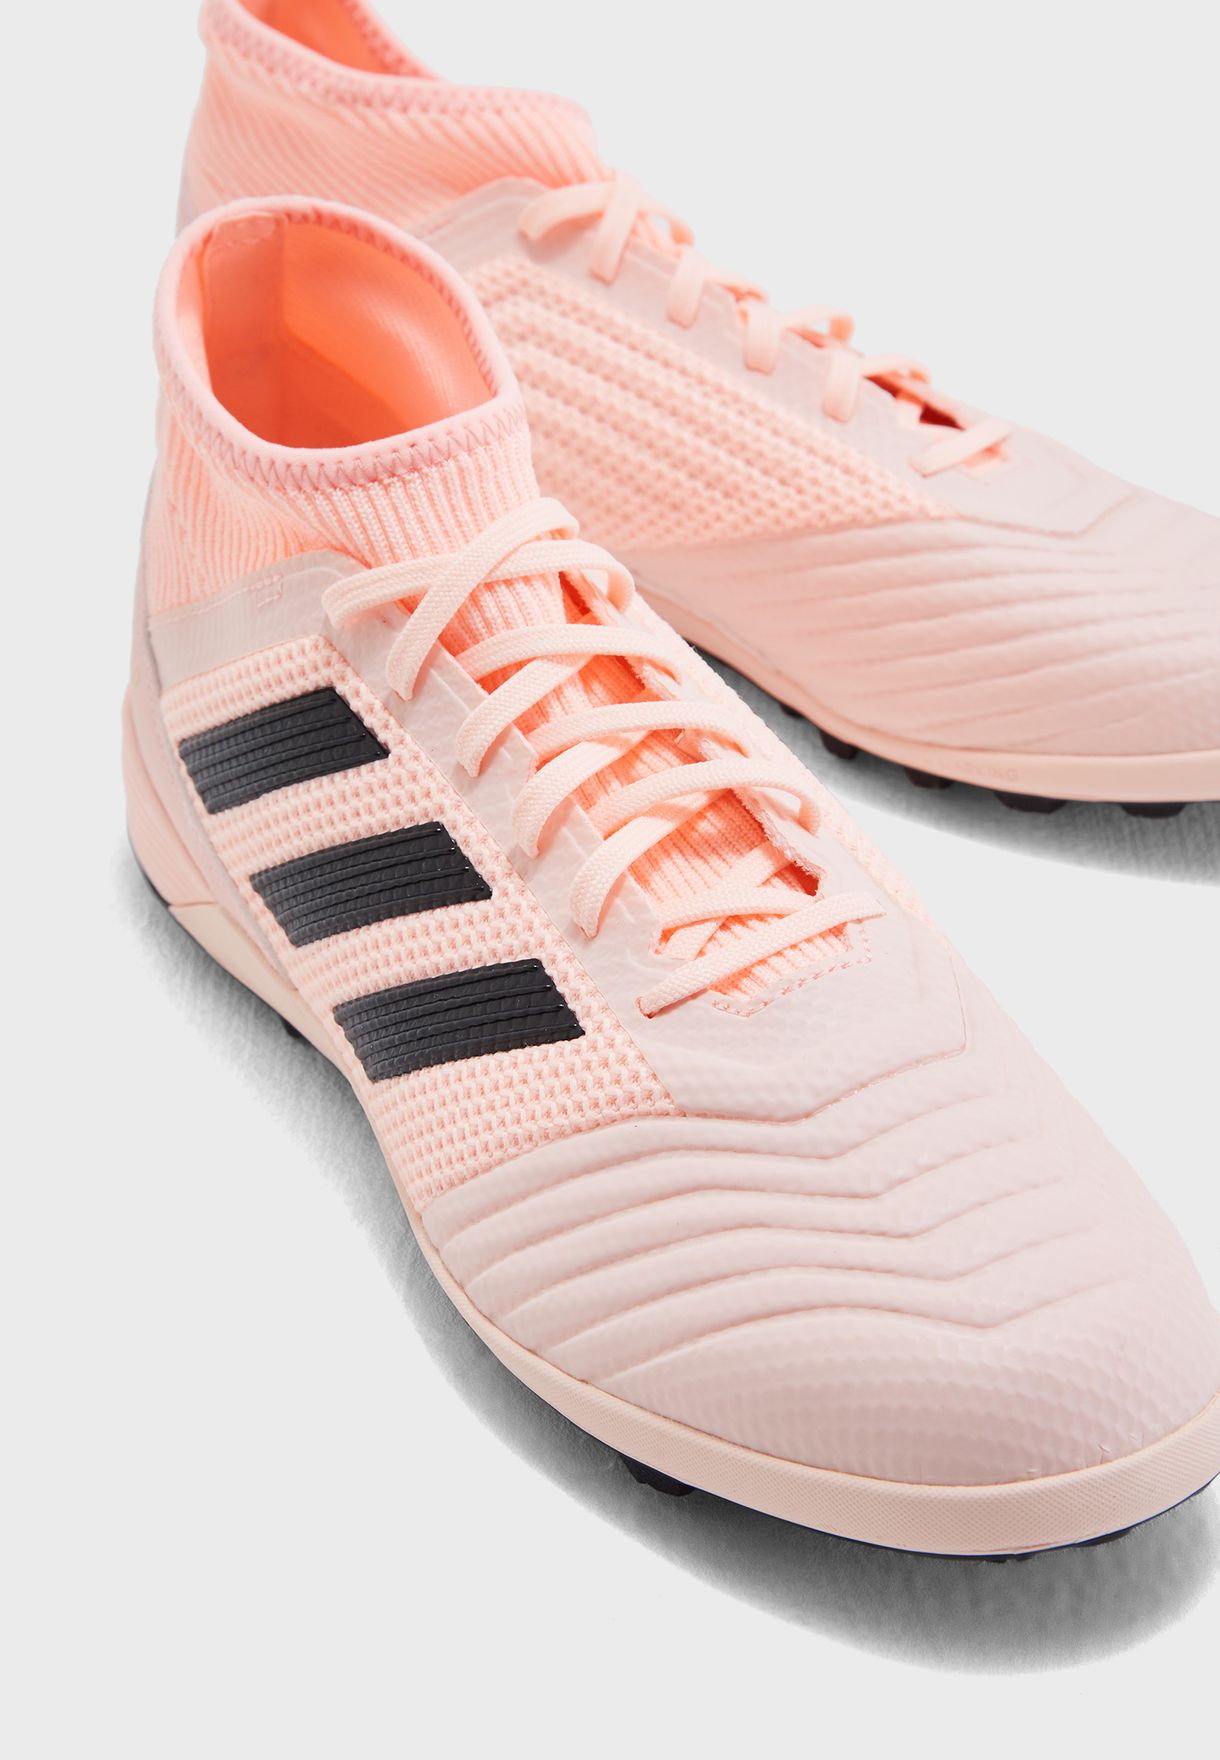 adidas predator tango 18.3 tf pink